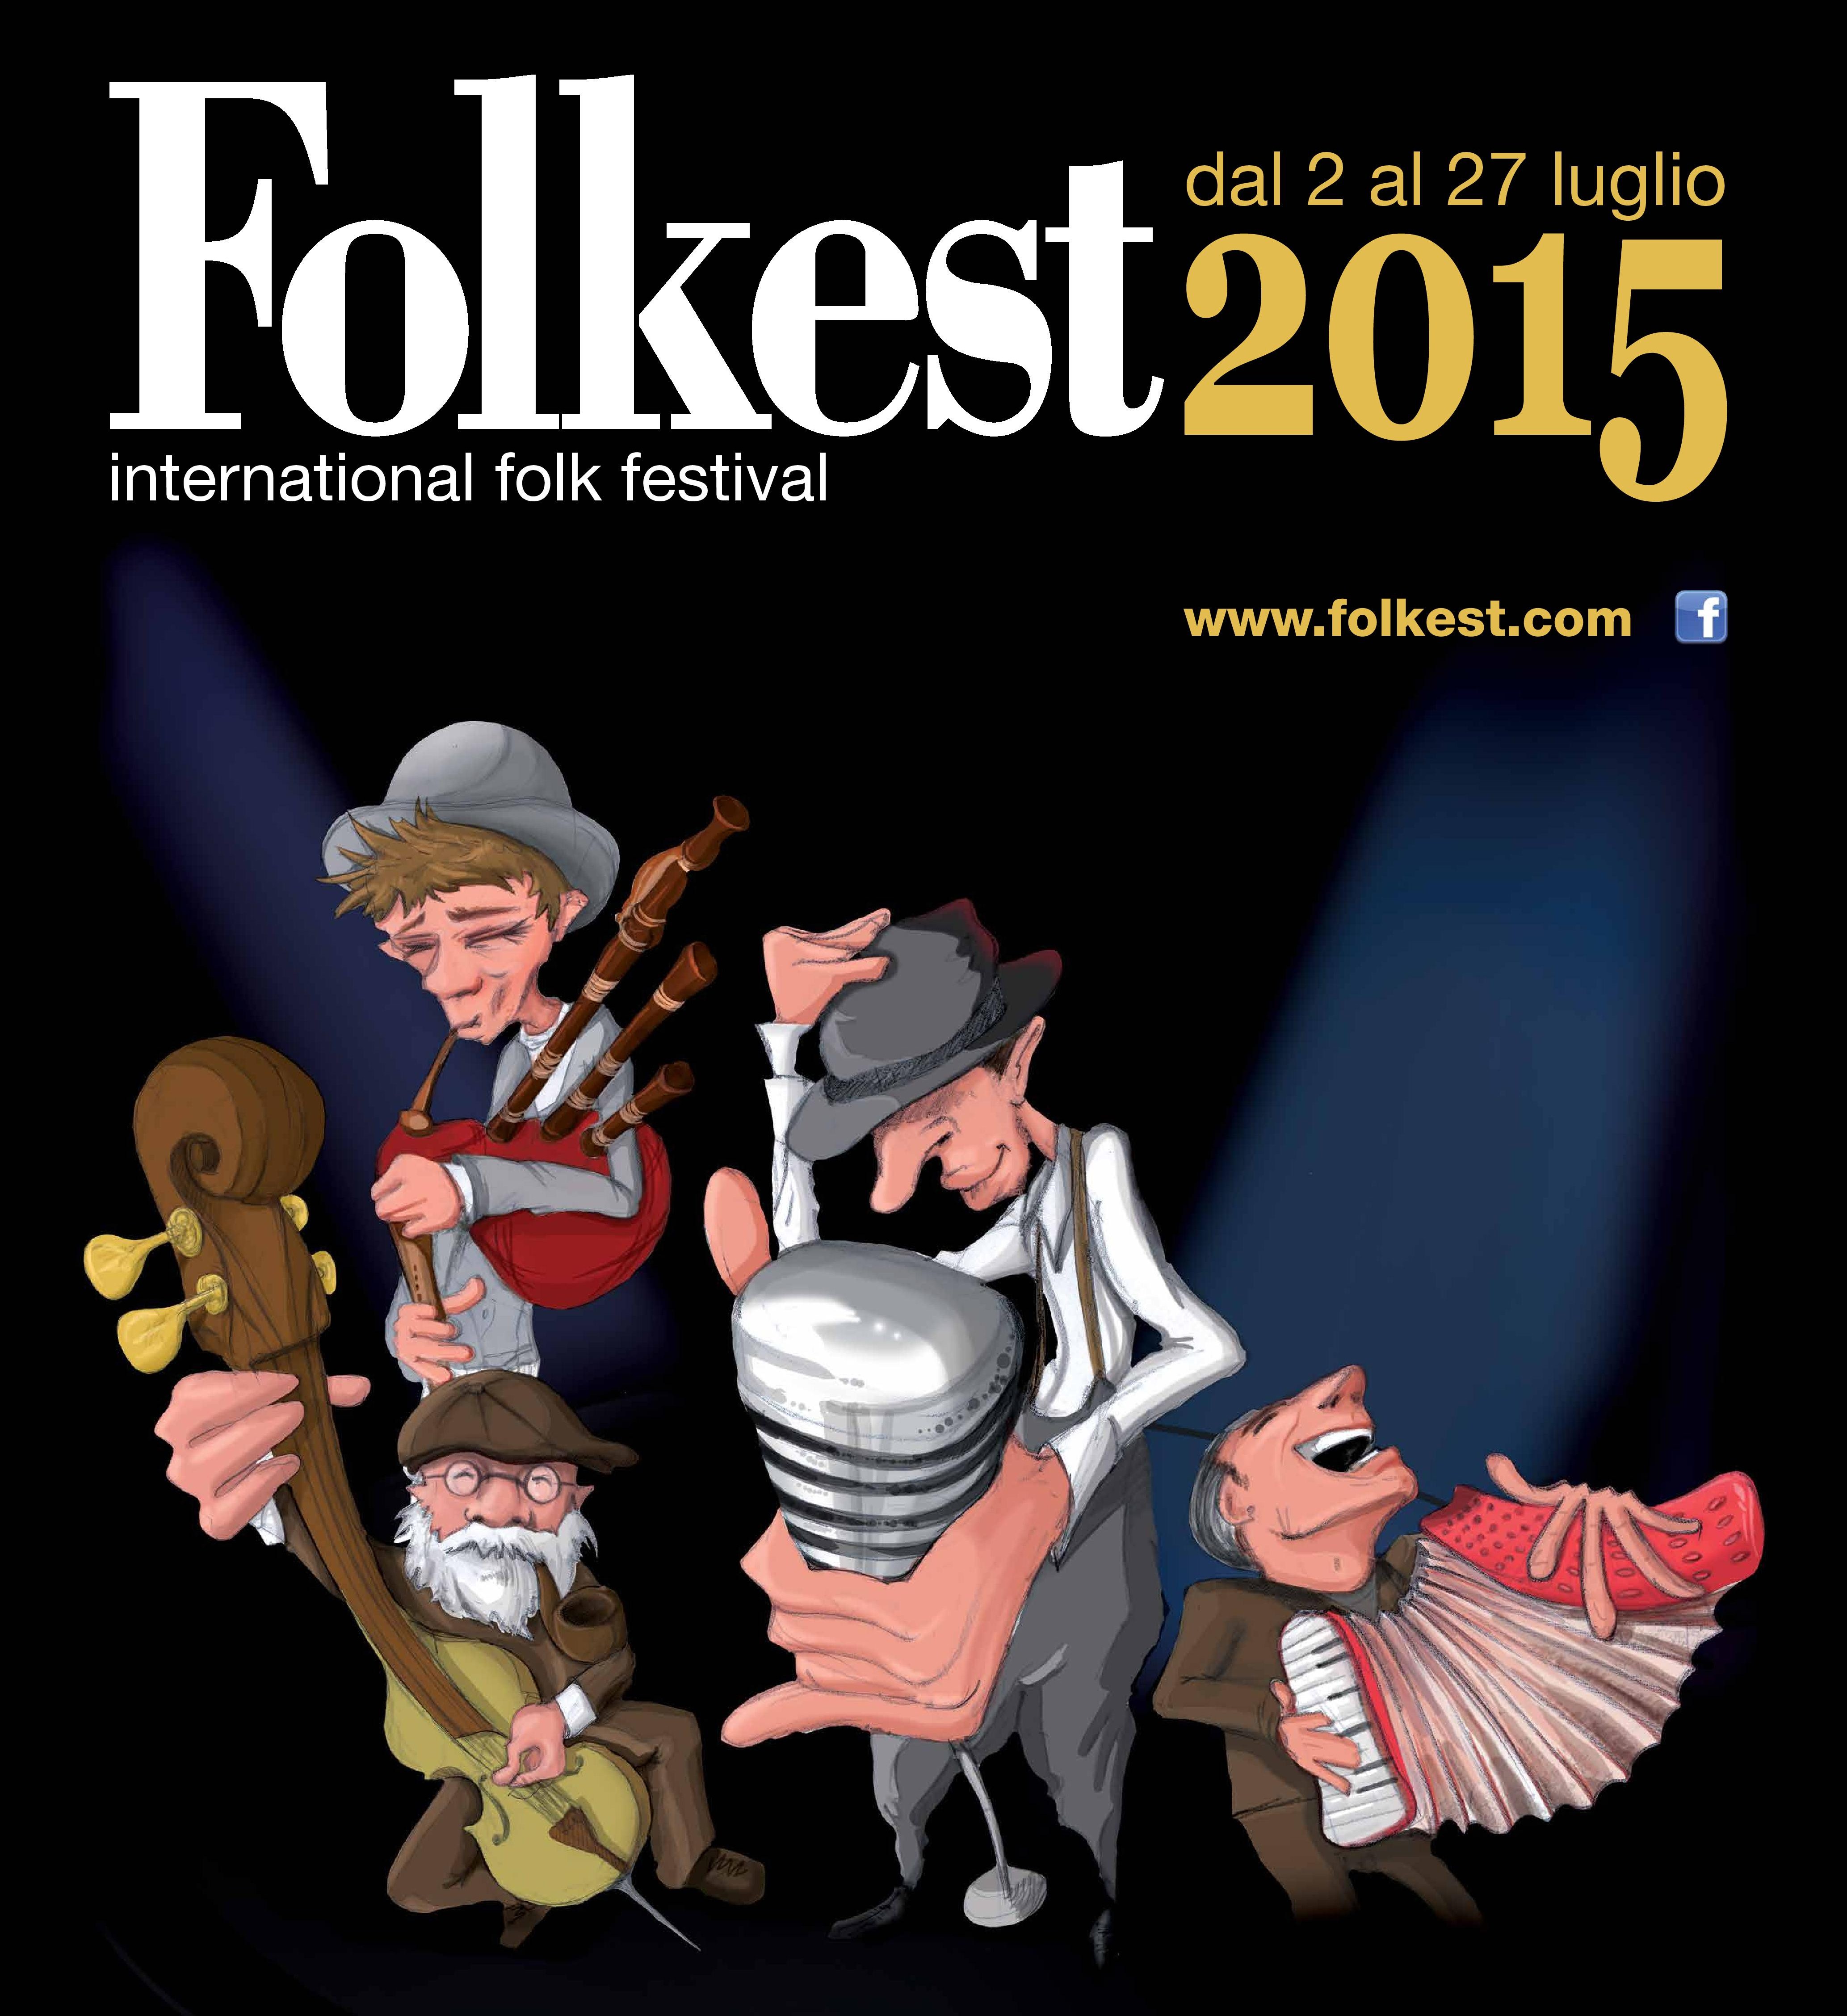 FOLKEST: international folk festival